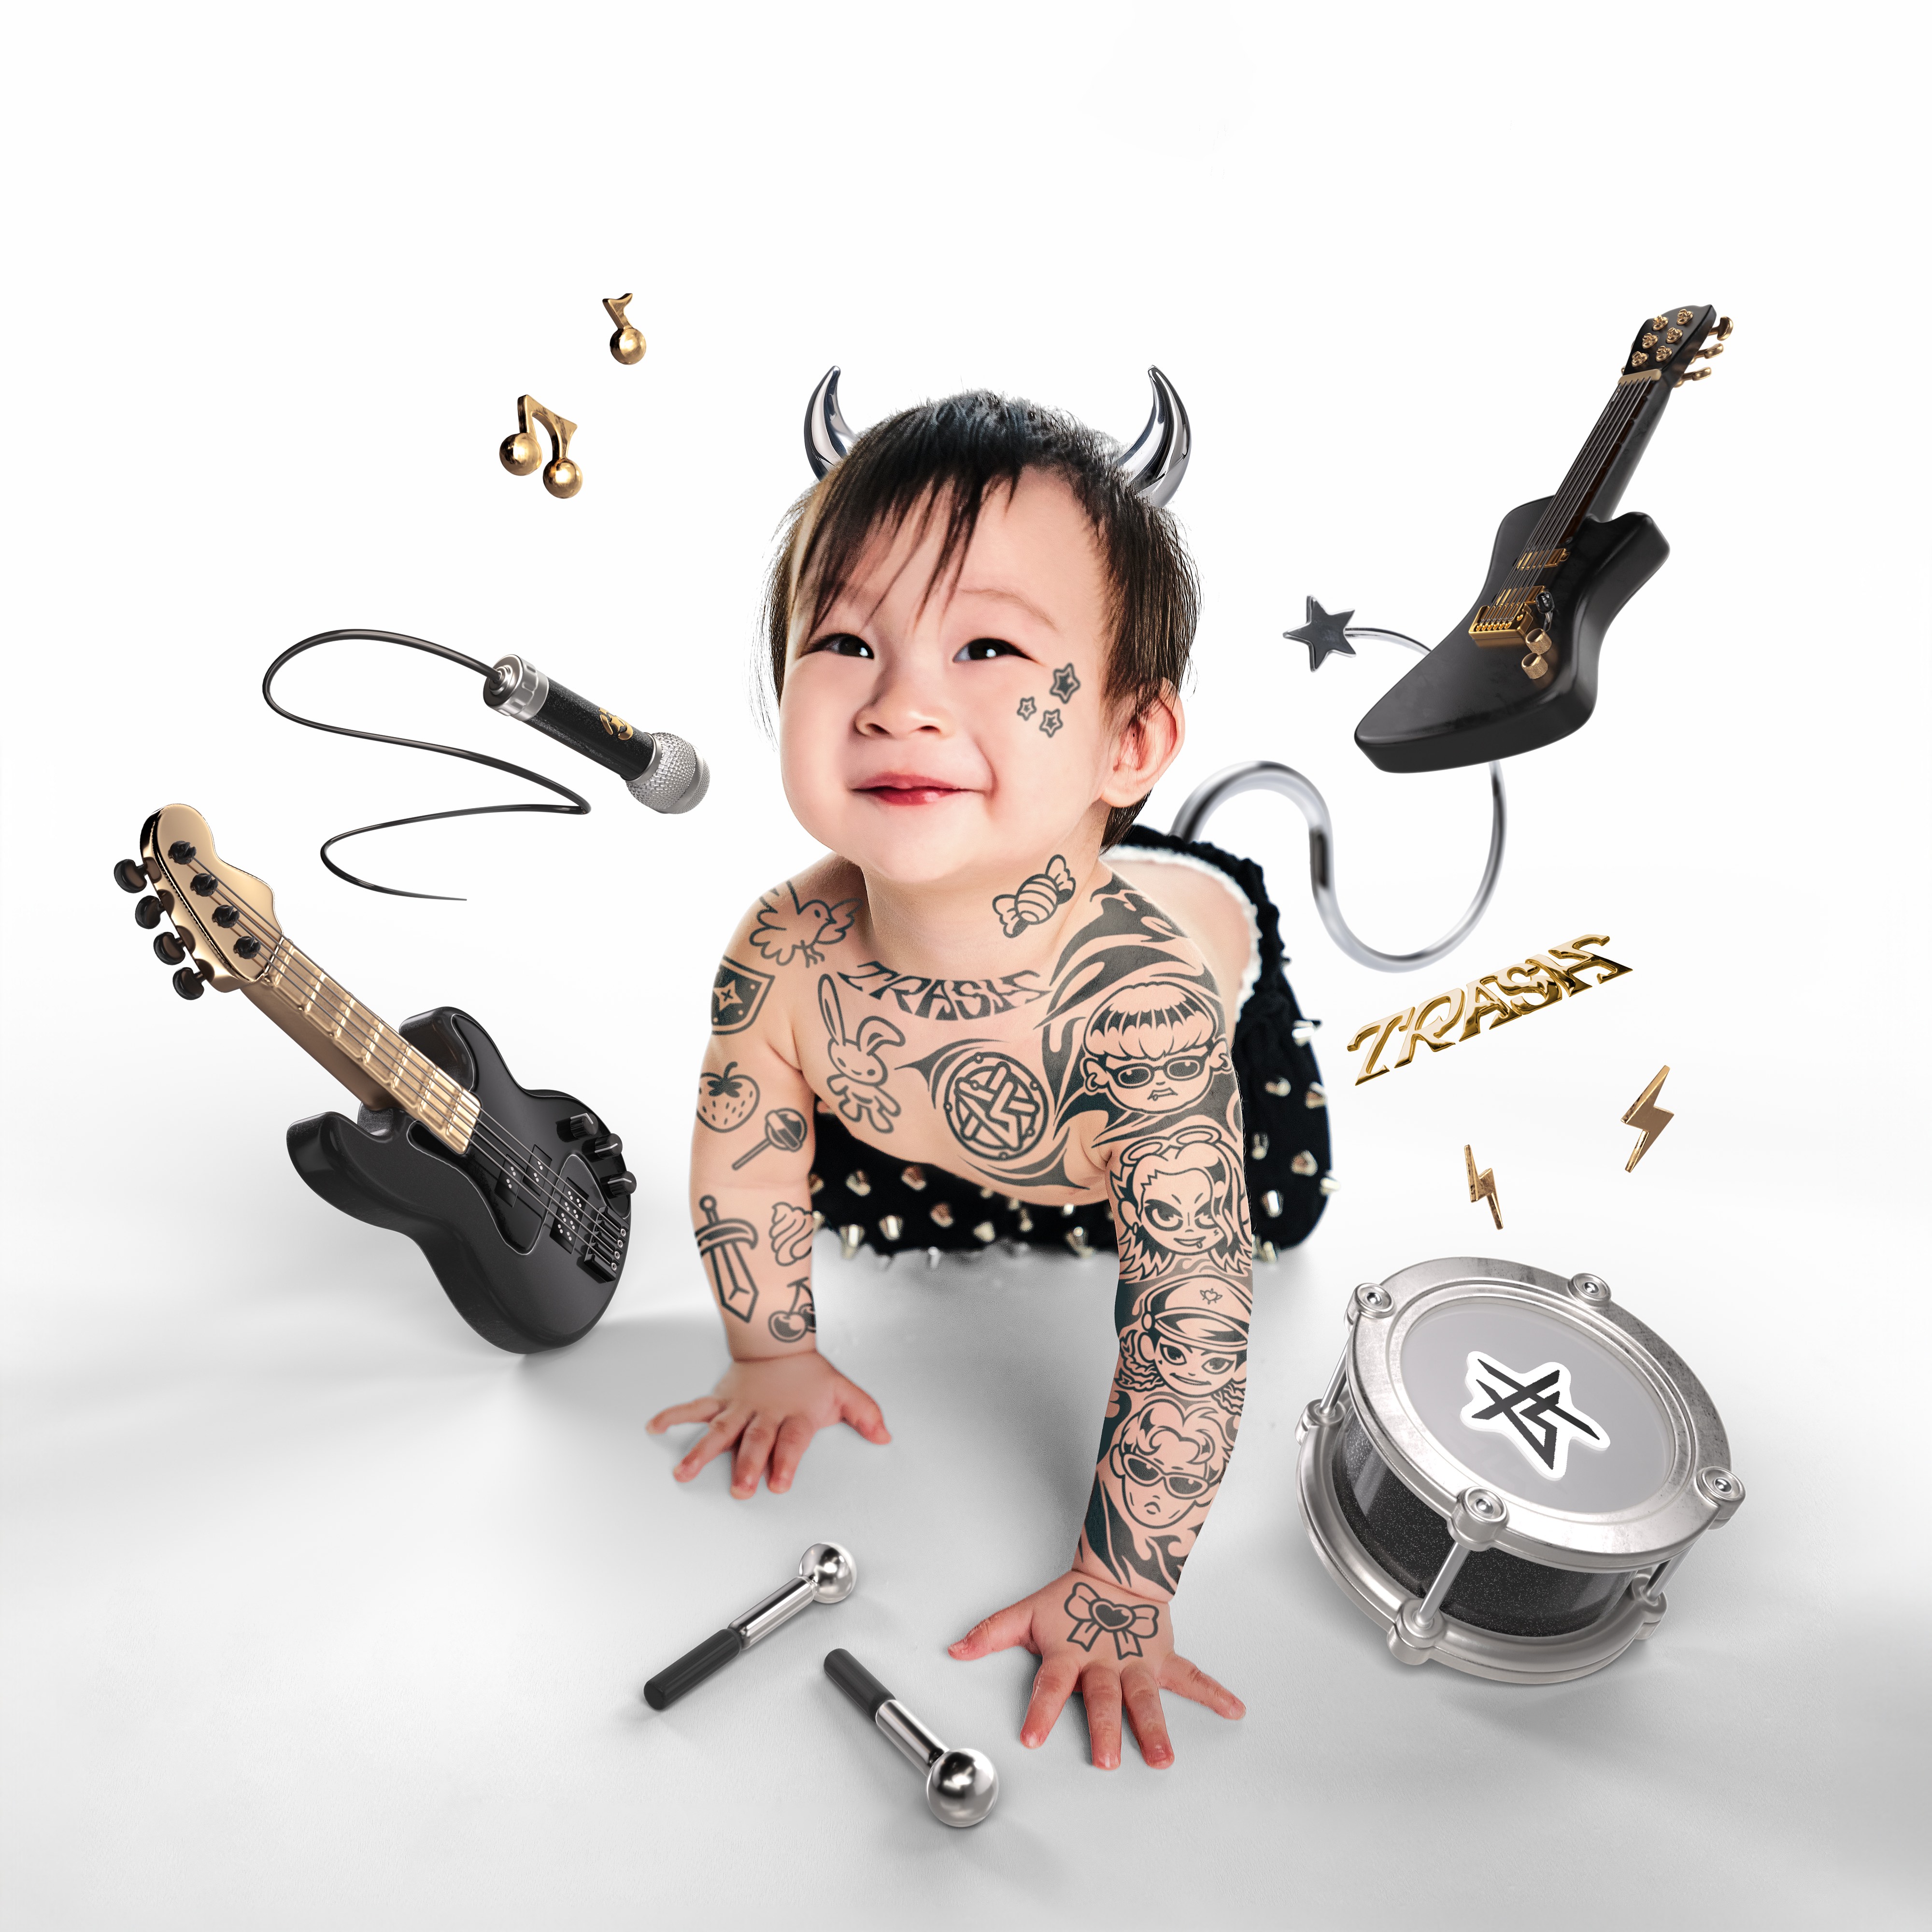 〈21世紀最強兒歌〉單曲封面出動阿夜兒子小朋擔任模特兒。圖/華納音樂提供